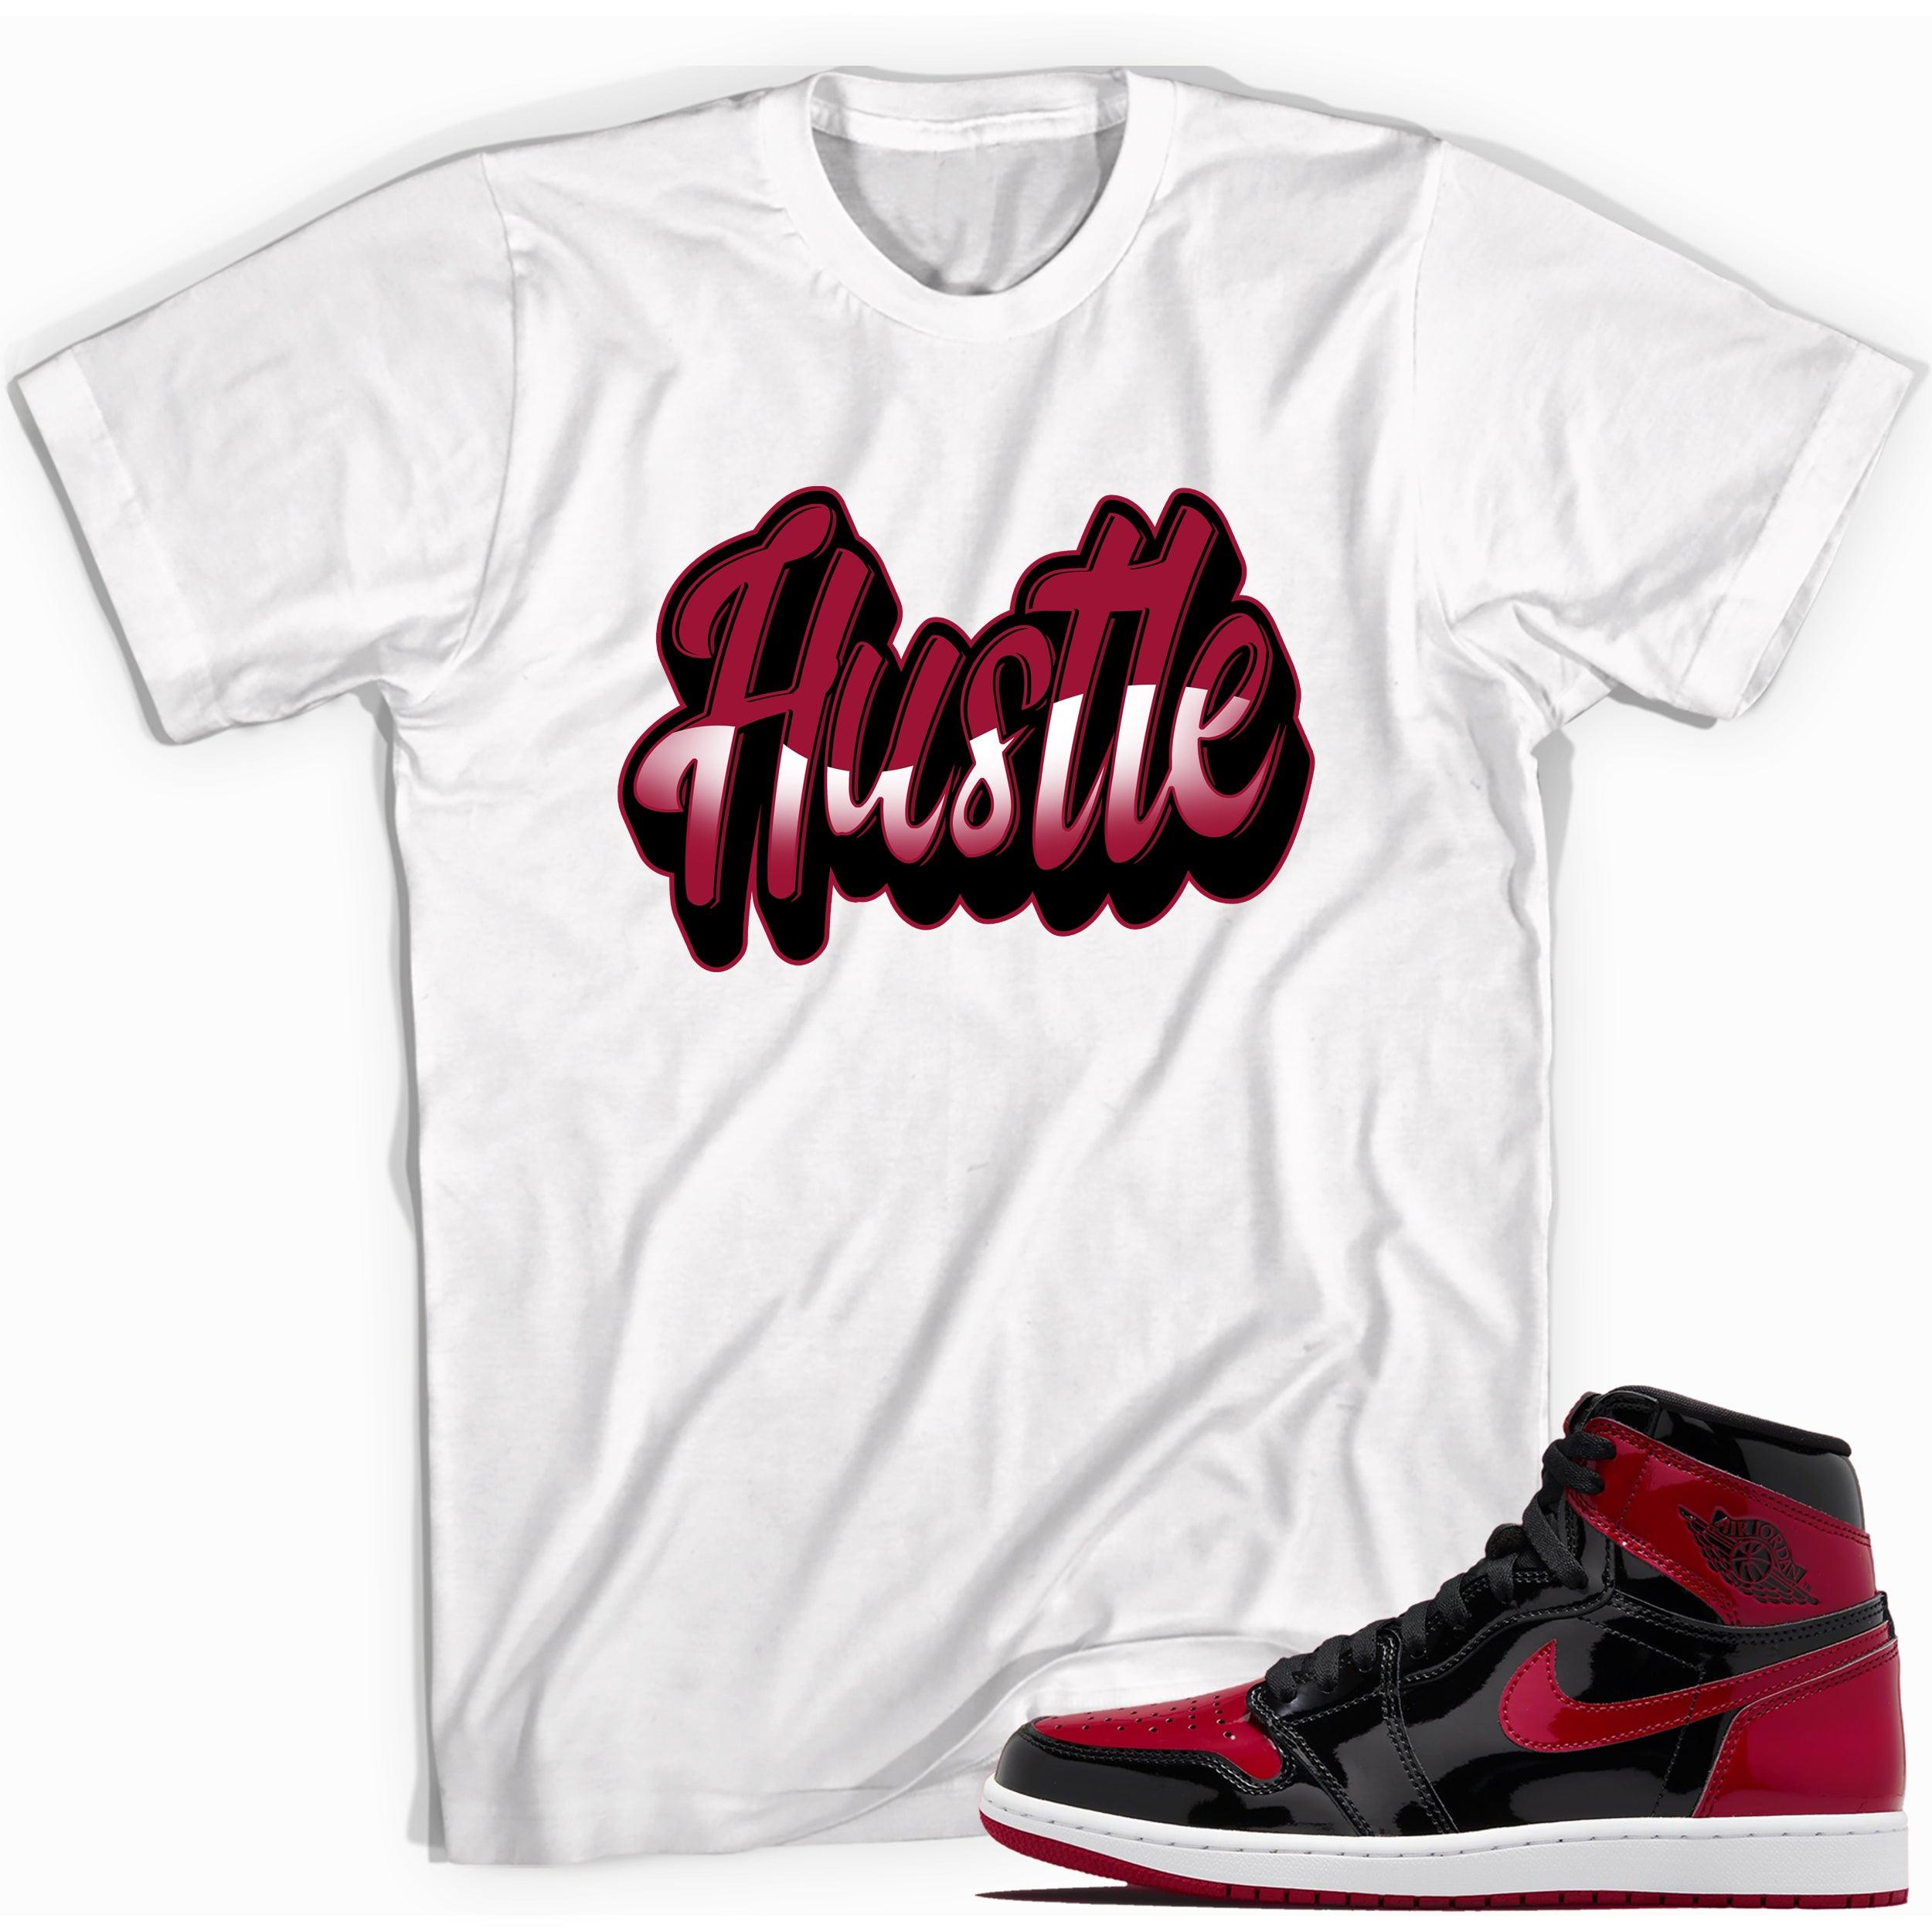 White Hustle Shirt for Jordan 1s Bred Patent photo